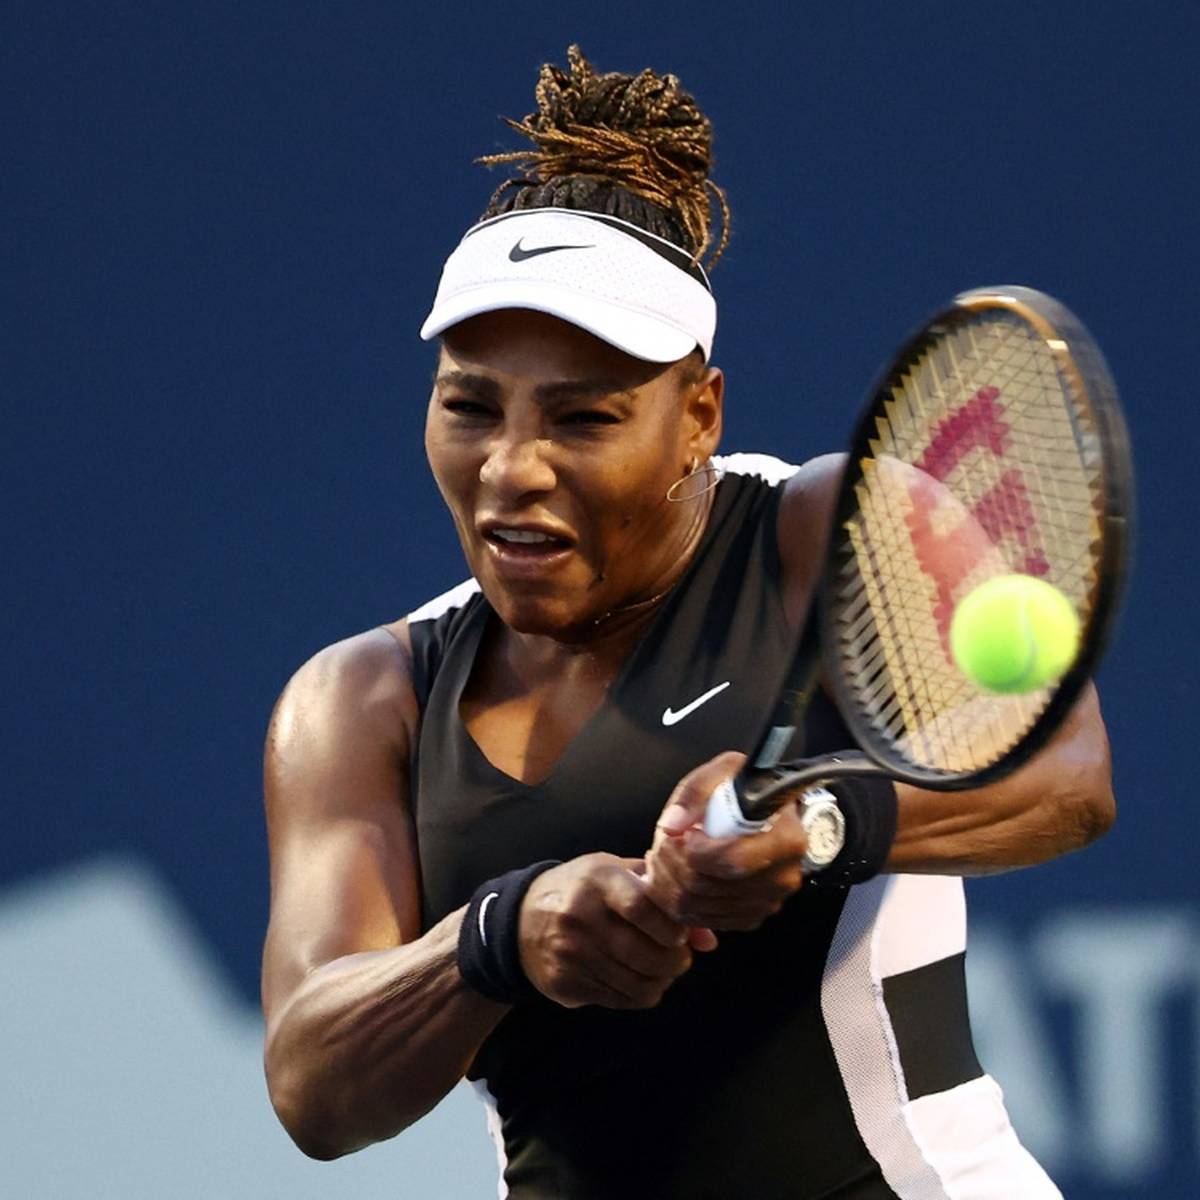 Harte Nuss zum Auftakt für Serena Williams: Der US-Tennis-Star muss auf seiner Abschiedstour beim WTA-Turnier in Cincinnati gegen US-Open-Siegerin Emma Raducanu antreten.